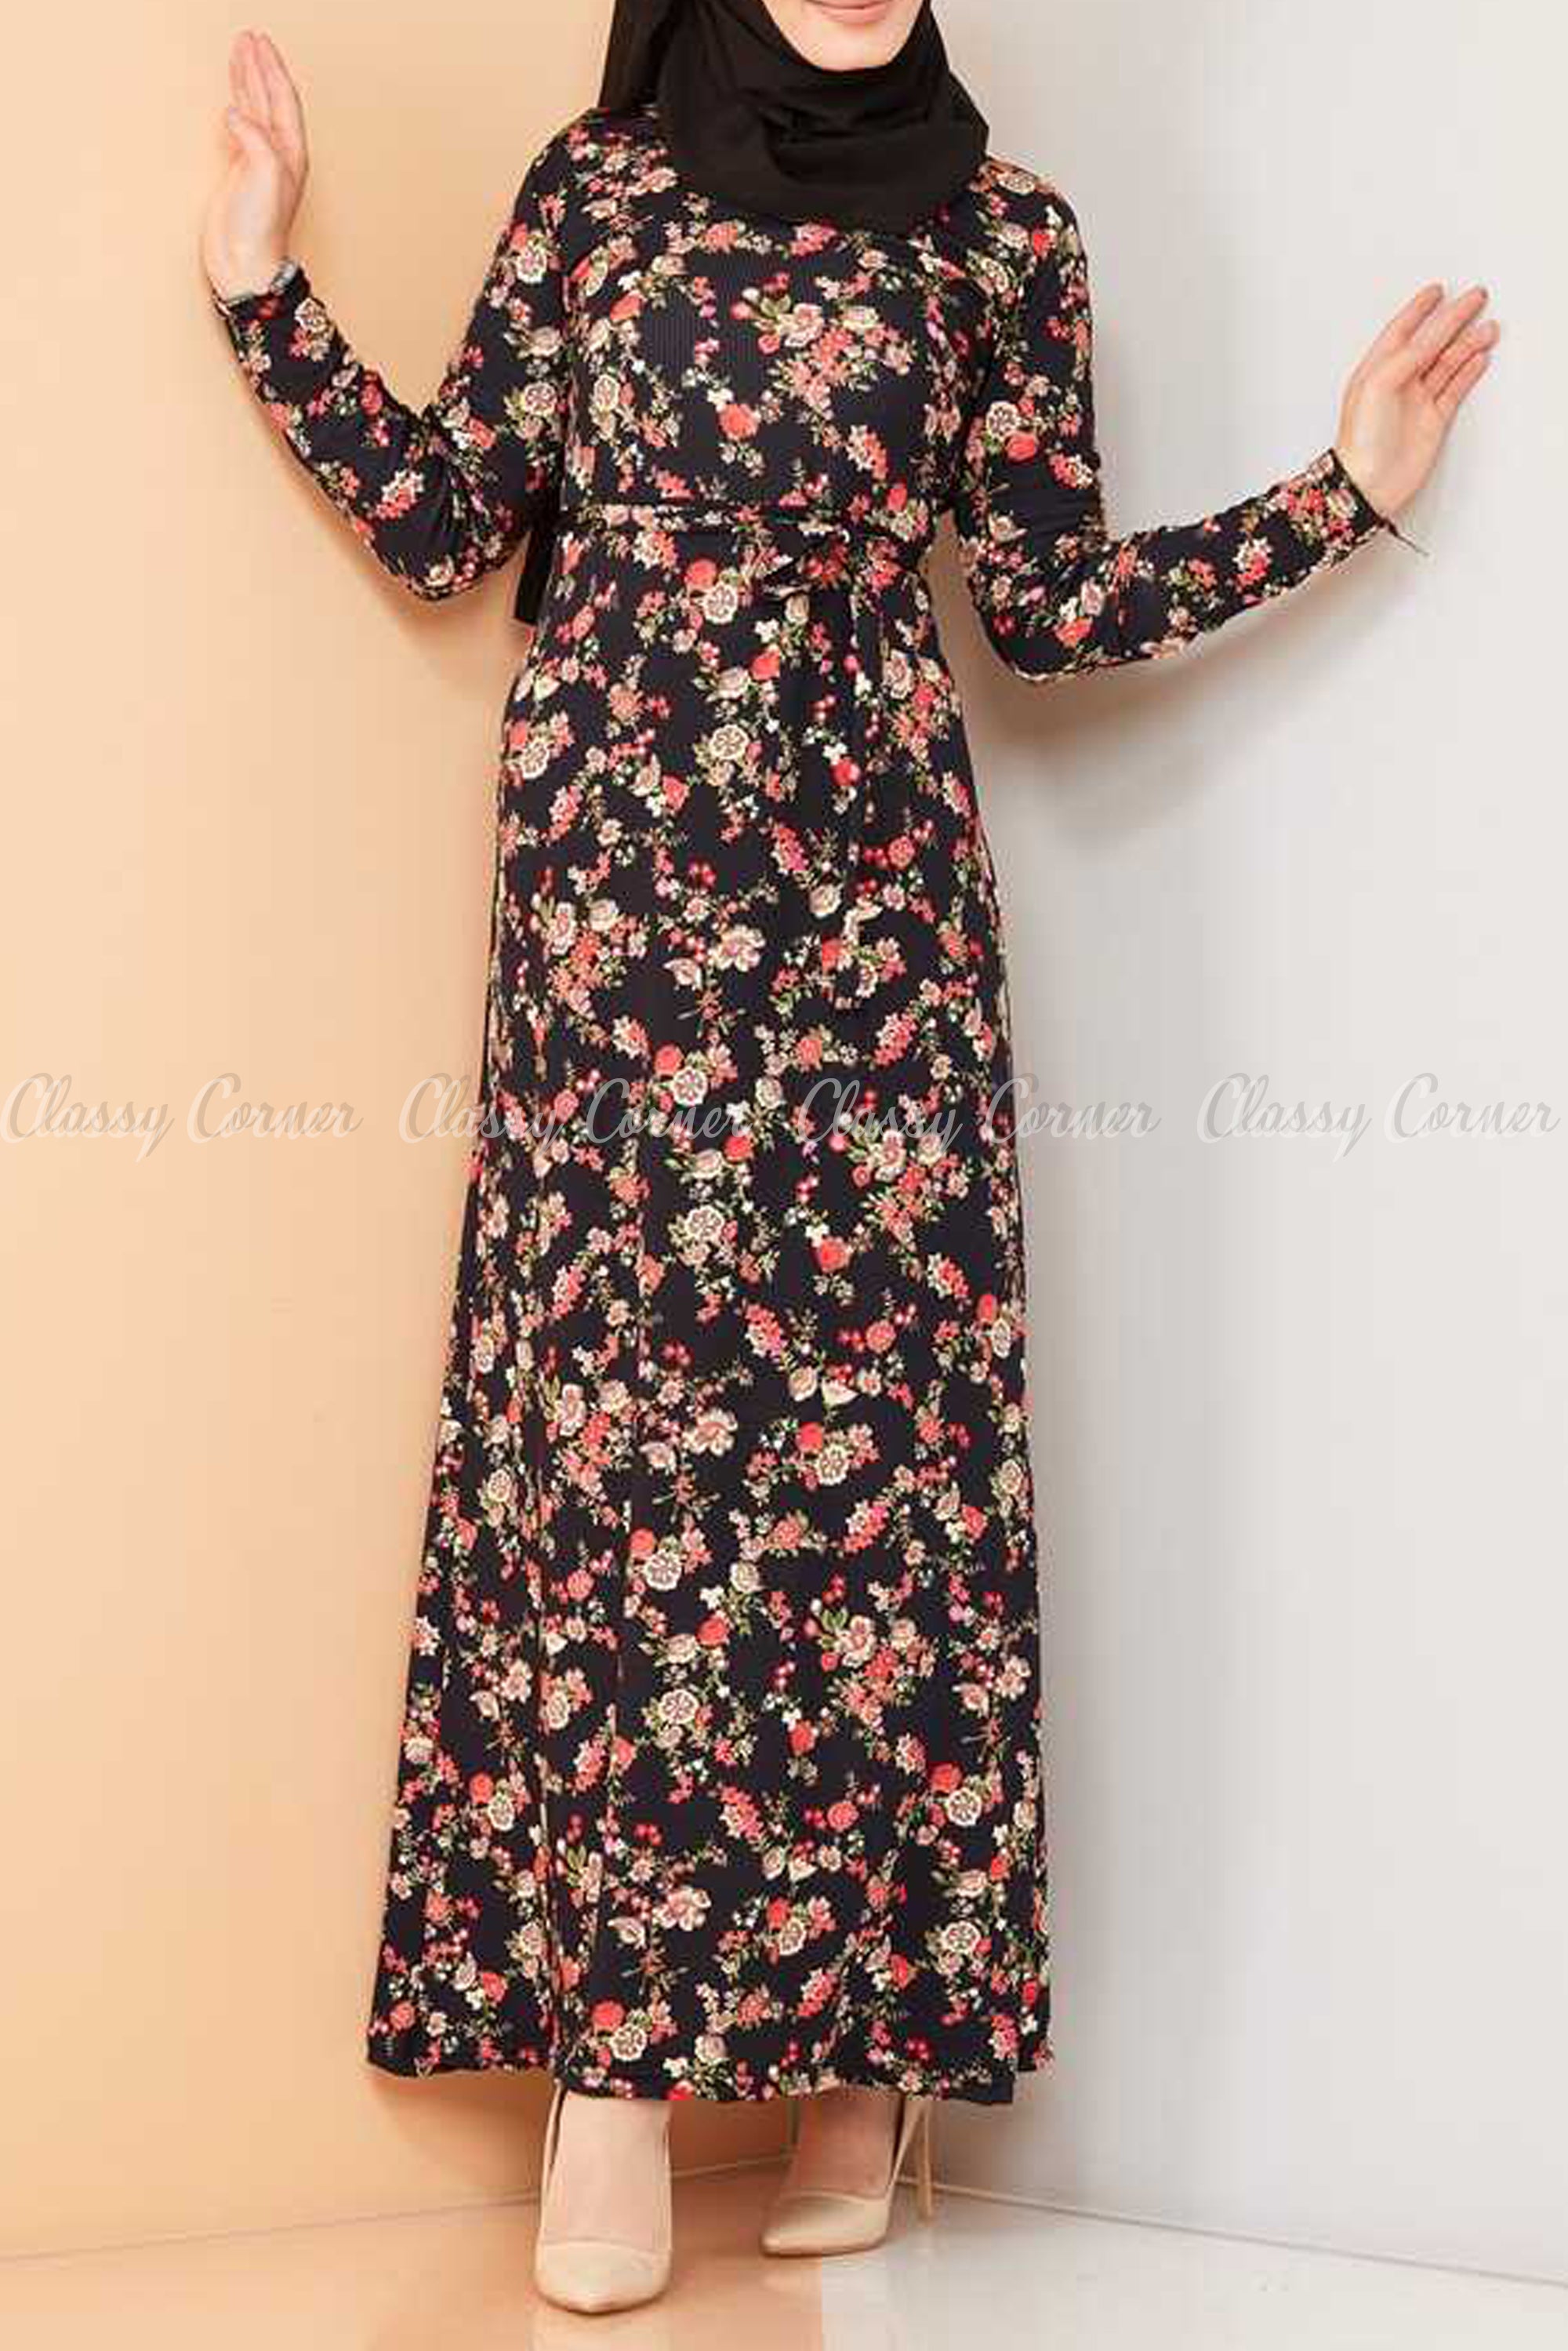 Multicolour Rose Print Black Modest Long Dress - front view